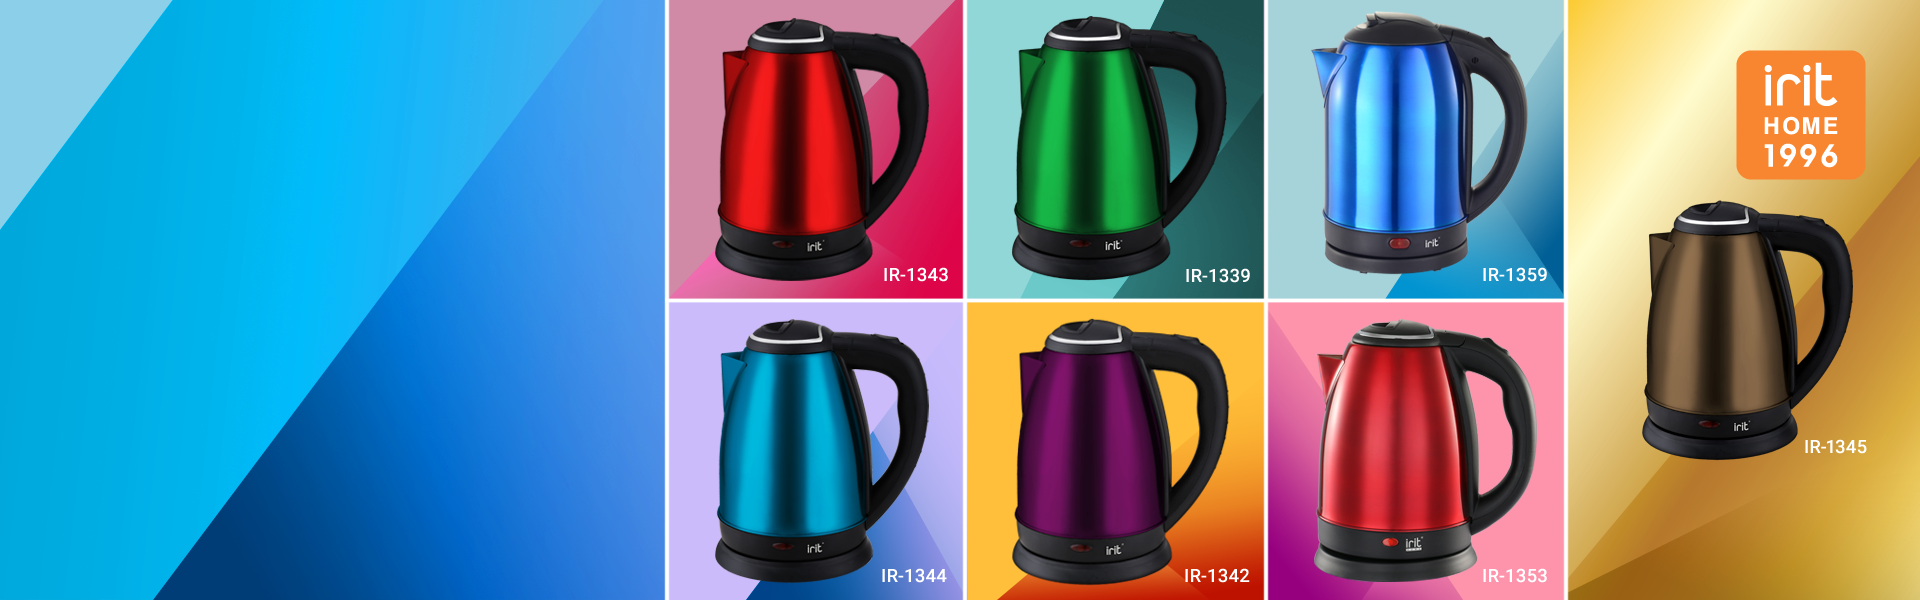 Цветные чайники IRIT